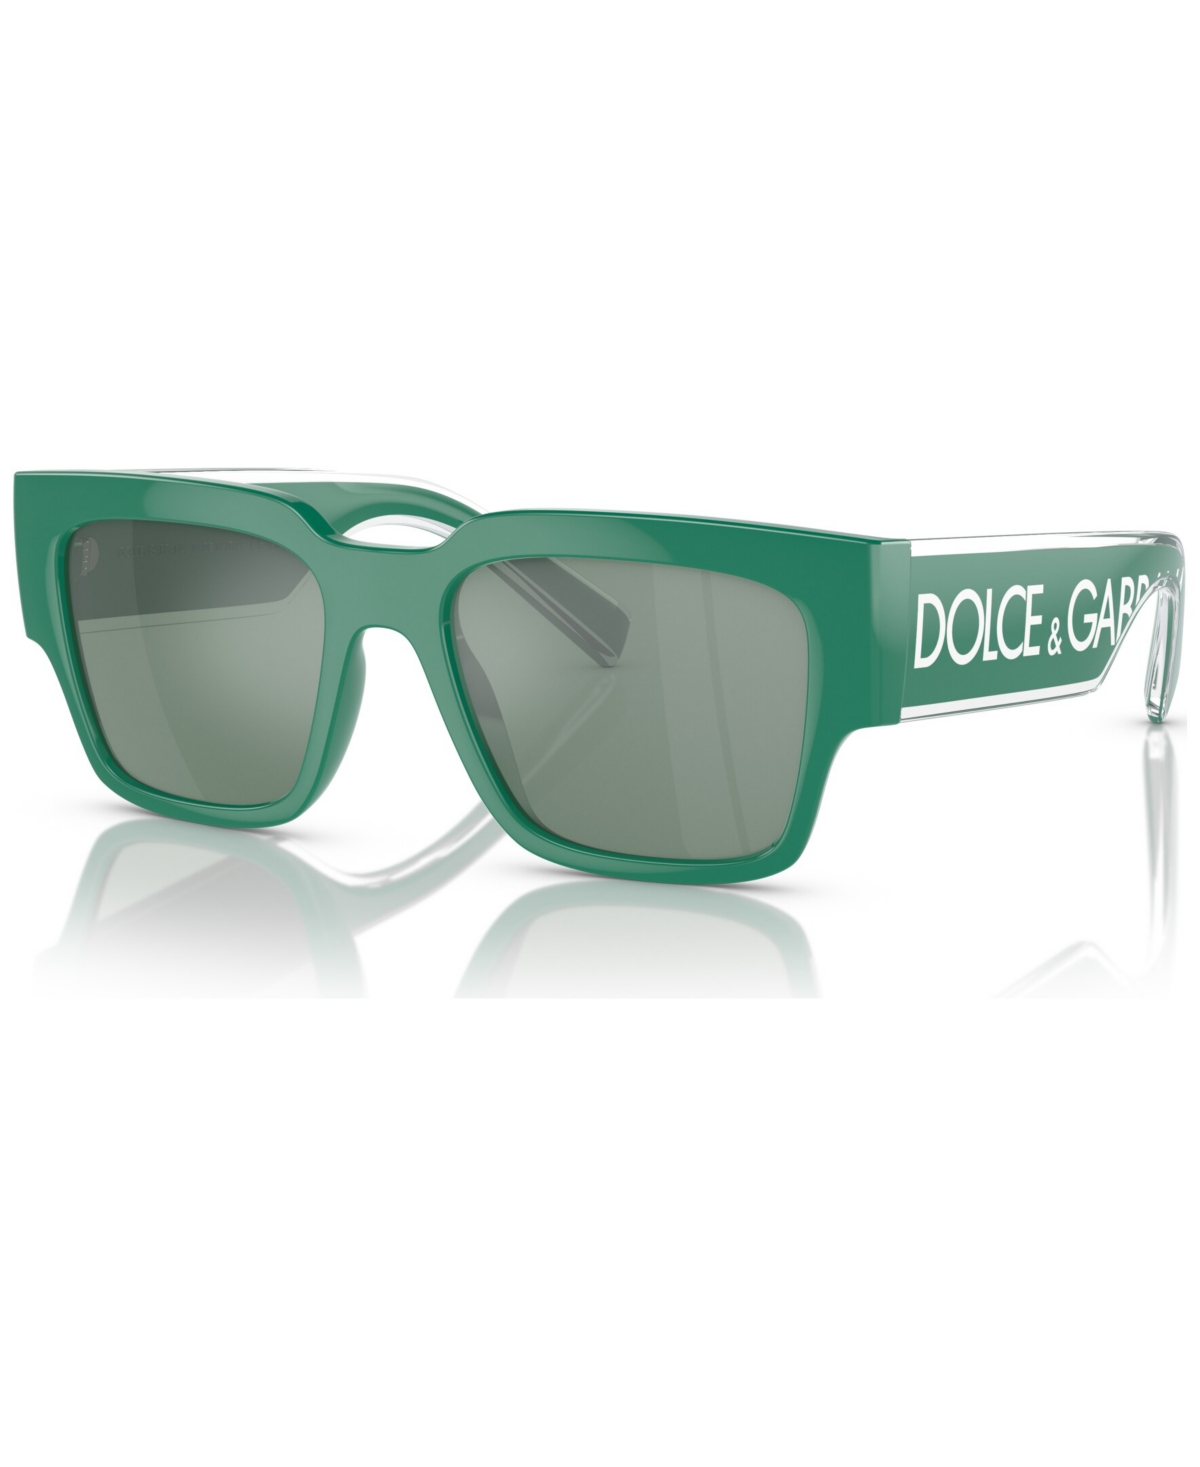 Dolce & Gabbana Dolce&gabbana Man Sunglass Dg6184 In Petrol Green Mirror Silver